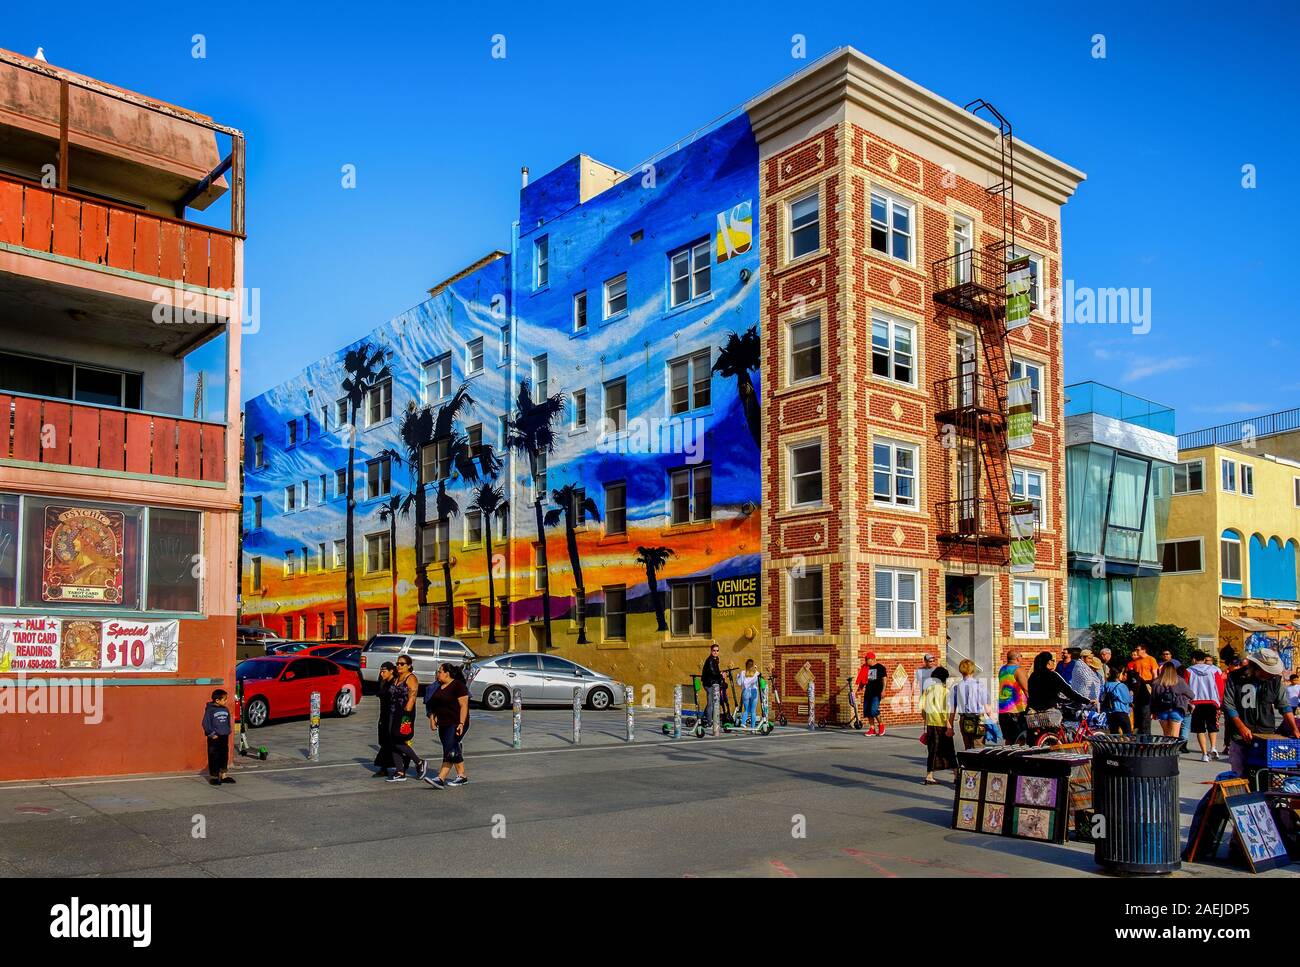 Los Angeles, Californie, mars 2019, scène urbaine devant l'hôtel Venice Suites sur Ocean Front Walk, Venice Beach Banque D'Images